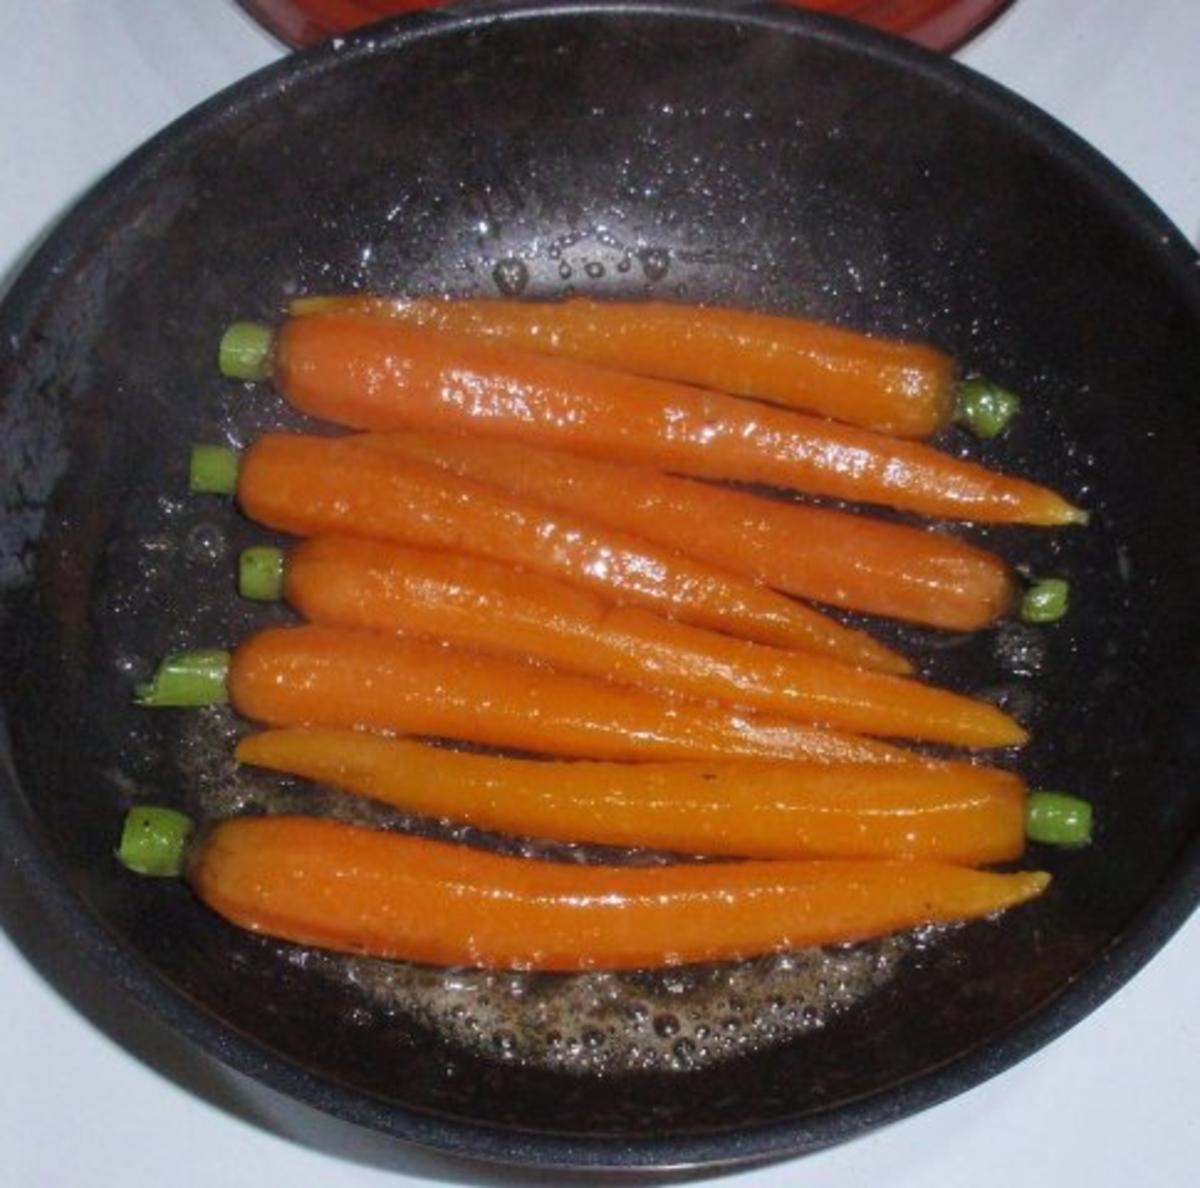 Filetstreifen in Tomatensugo mit glasierten Karotten und Basmatireis - Rezept - Bild Nr. 14